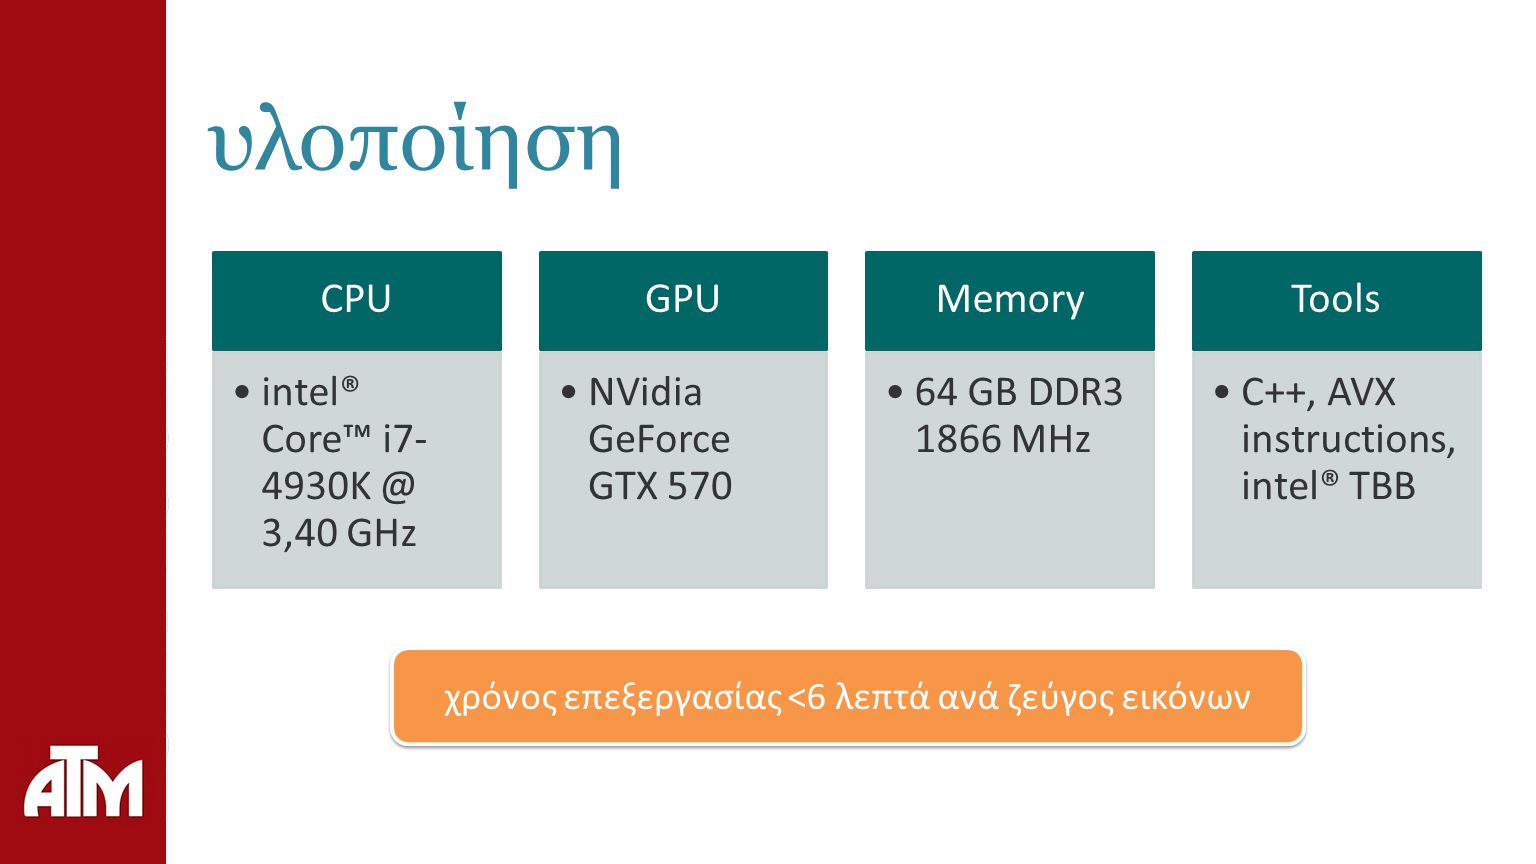 υλοποίηση CPU intel® Core™ i7- 3,40 GHz GPU NVidia GeForce GTX 570 Memory 64 GB DDR MHz Tools C++, AVX instructions, intel® TBB χρόνος επεξεργασίας <6 λεπτά ανά ζεύγος εικόνων